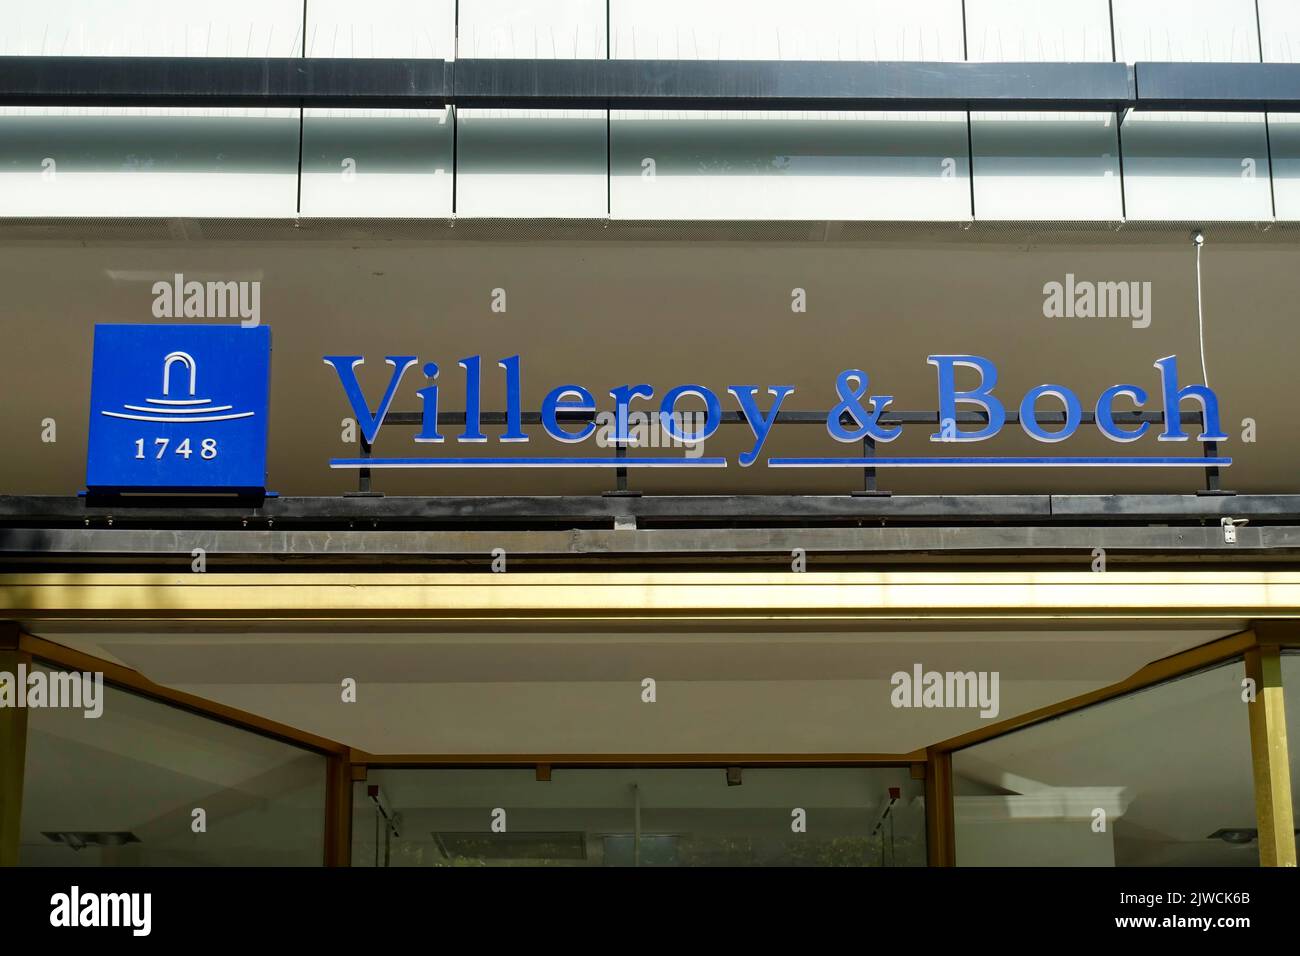 Filiale de Villeroy & Boch, fabricant allemand de céramiques, Berlin, Allemagne Banque D'Images